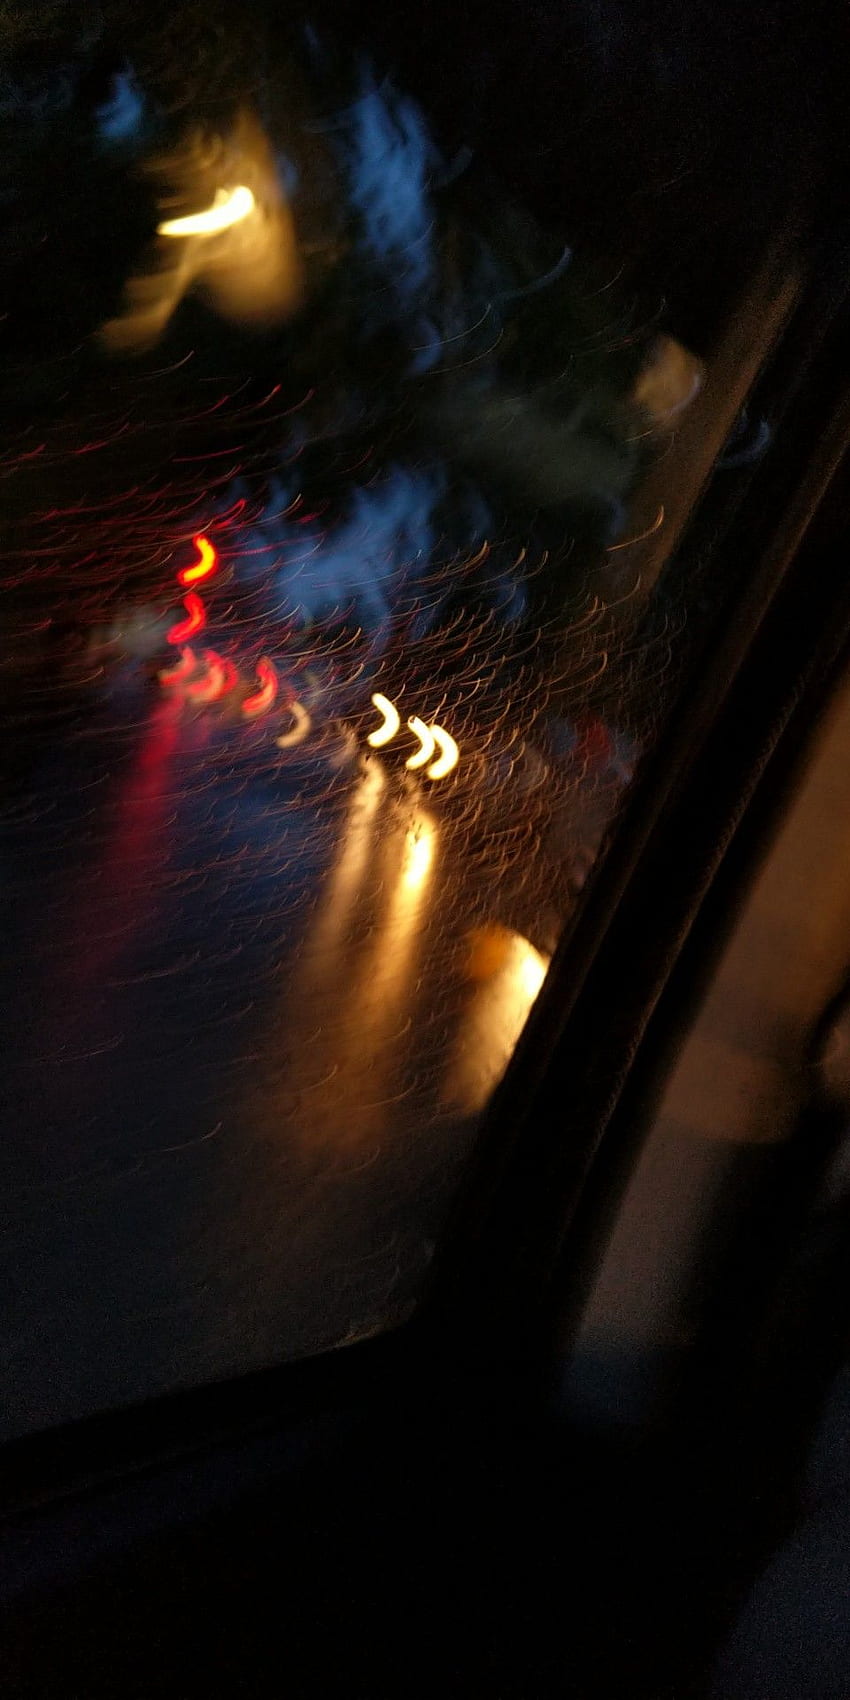 Ngồi trong xe trên một ngày mưa, chiêm ngưỡng cảnh ánh sáng phản chiếu qua cửa sổ xe tạo ra vẻ đẹp thẩm mỹ tuyệt đẹp. Cảm nhận không khí mát mẻ của mùa mưa, và cuộc đời ẩn hiện trong cơn mưa đêm đen tối.